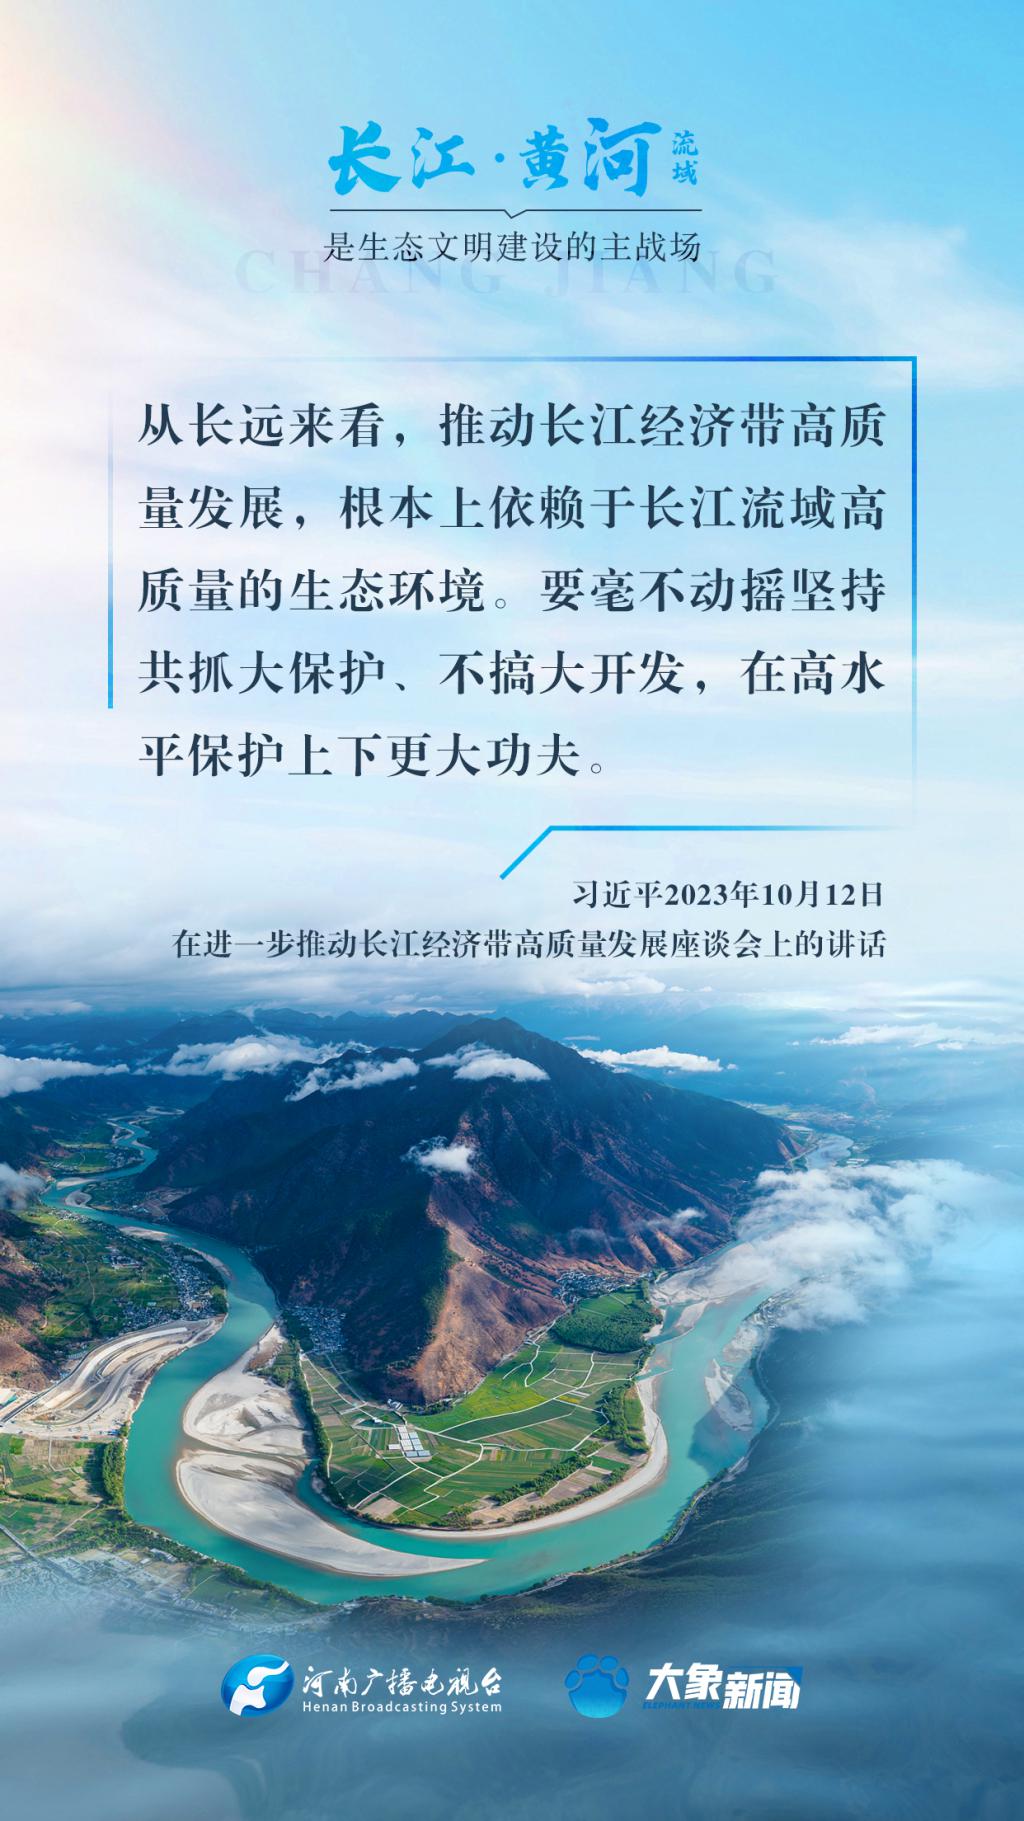 和谐共生|长江、黄河流域是生态文明建设的主战场  长江 生态 主战场 第1张